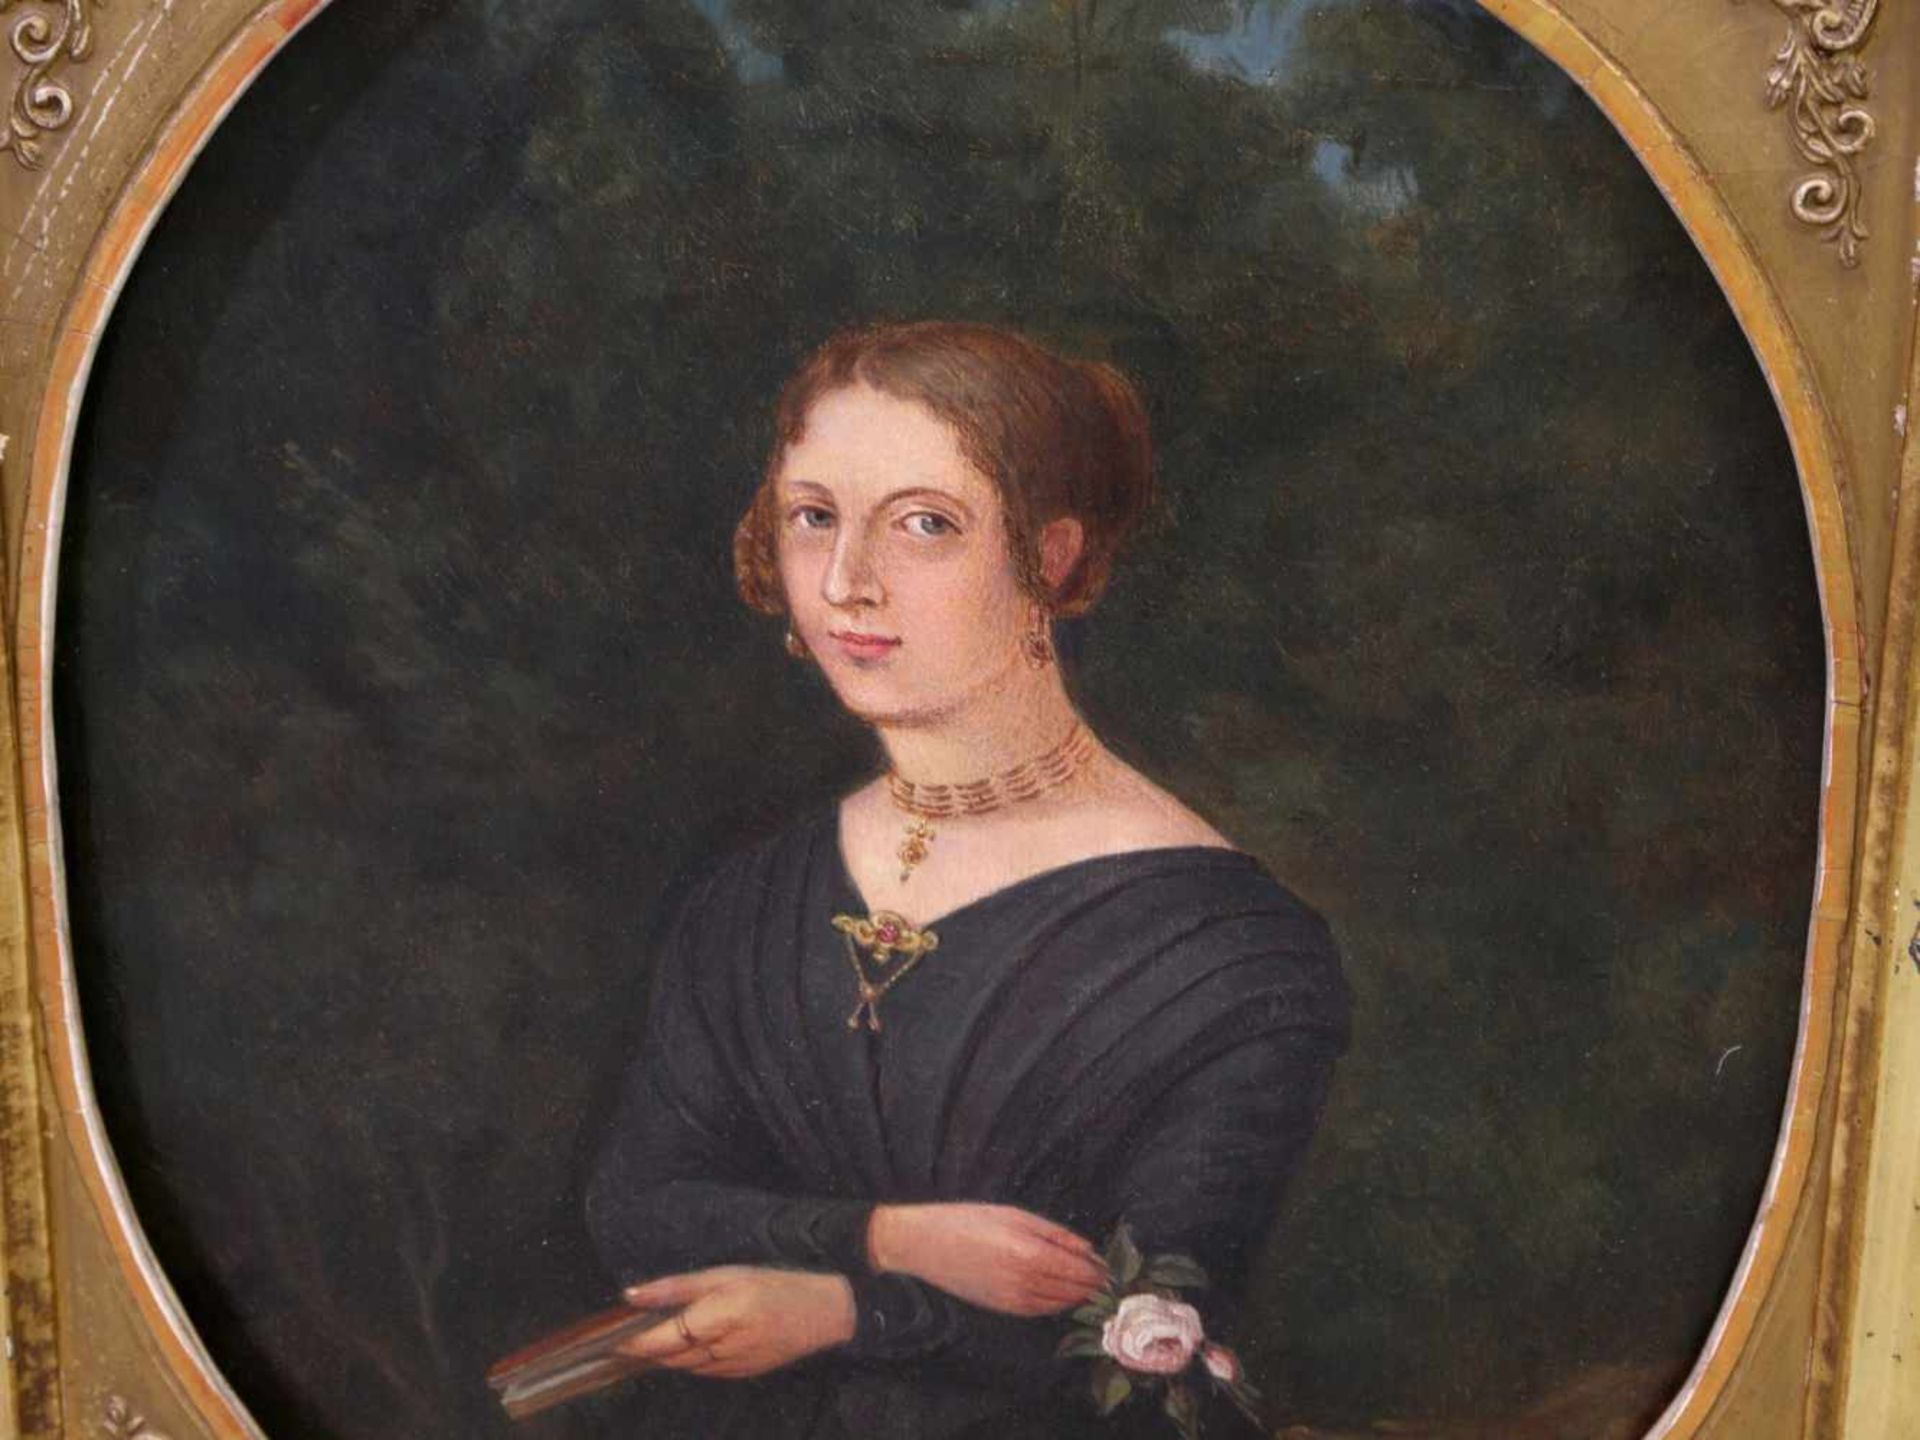 Unbekannt - Biedermeier-Portrait einer jungen Dame um 1850 - Image 4 of 10